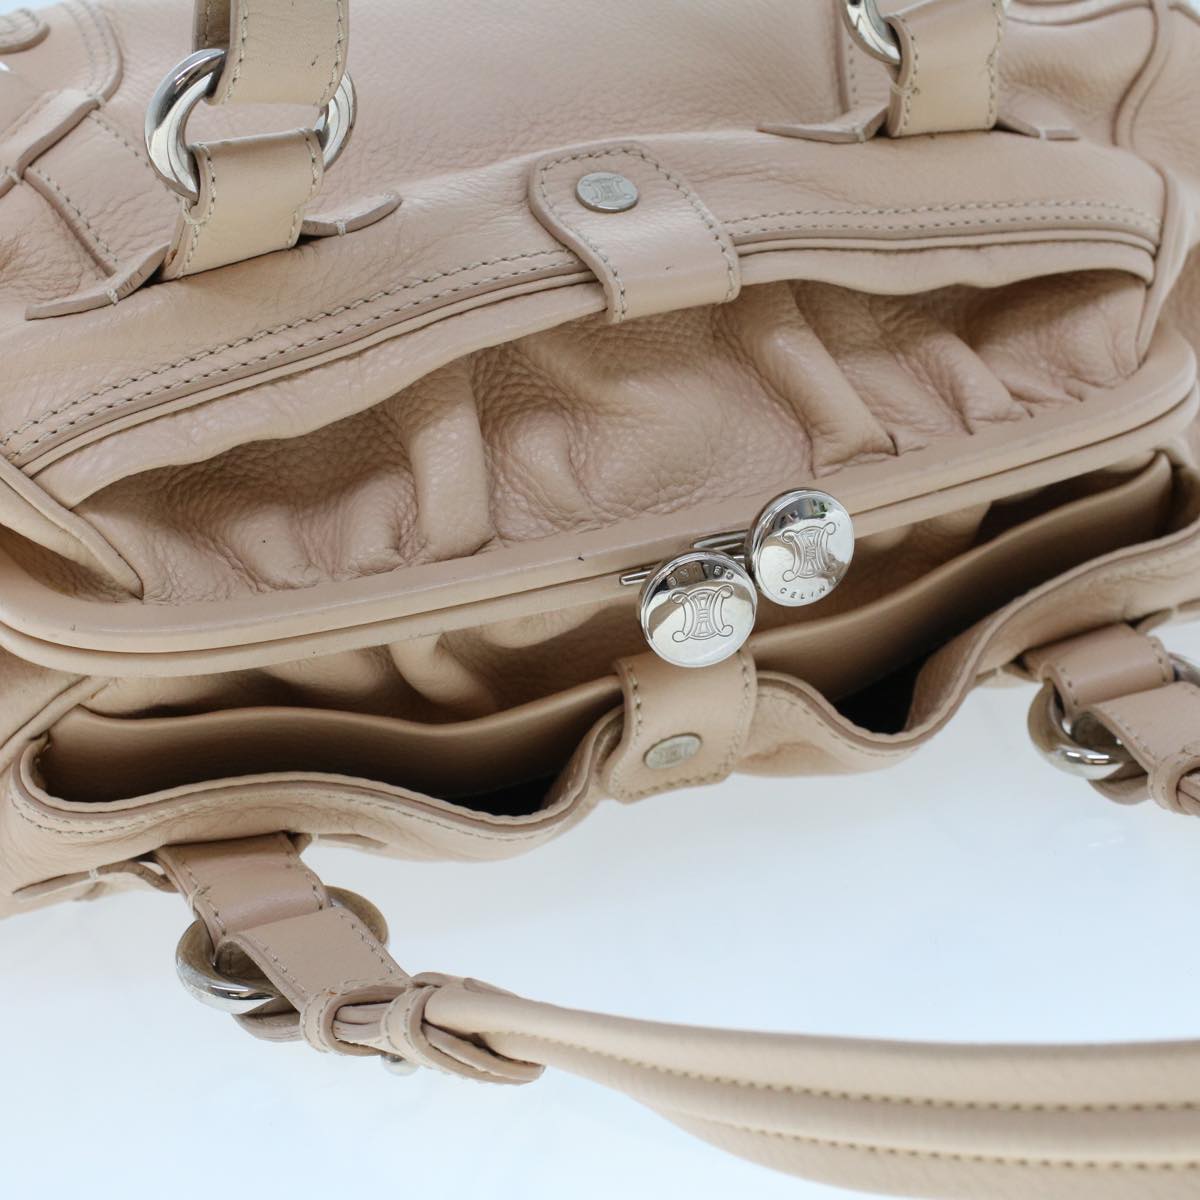 CELINE Shoulder Bag Leather Pink Auth bs5788